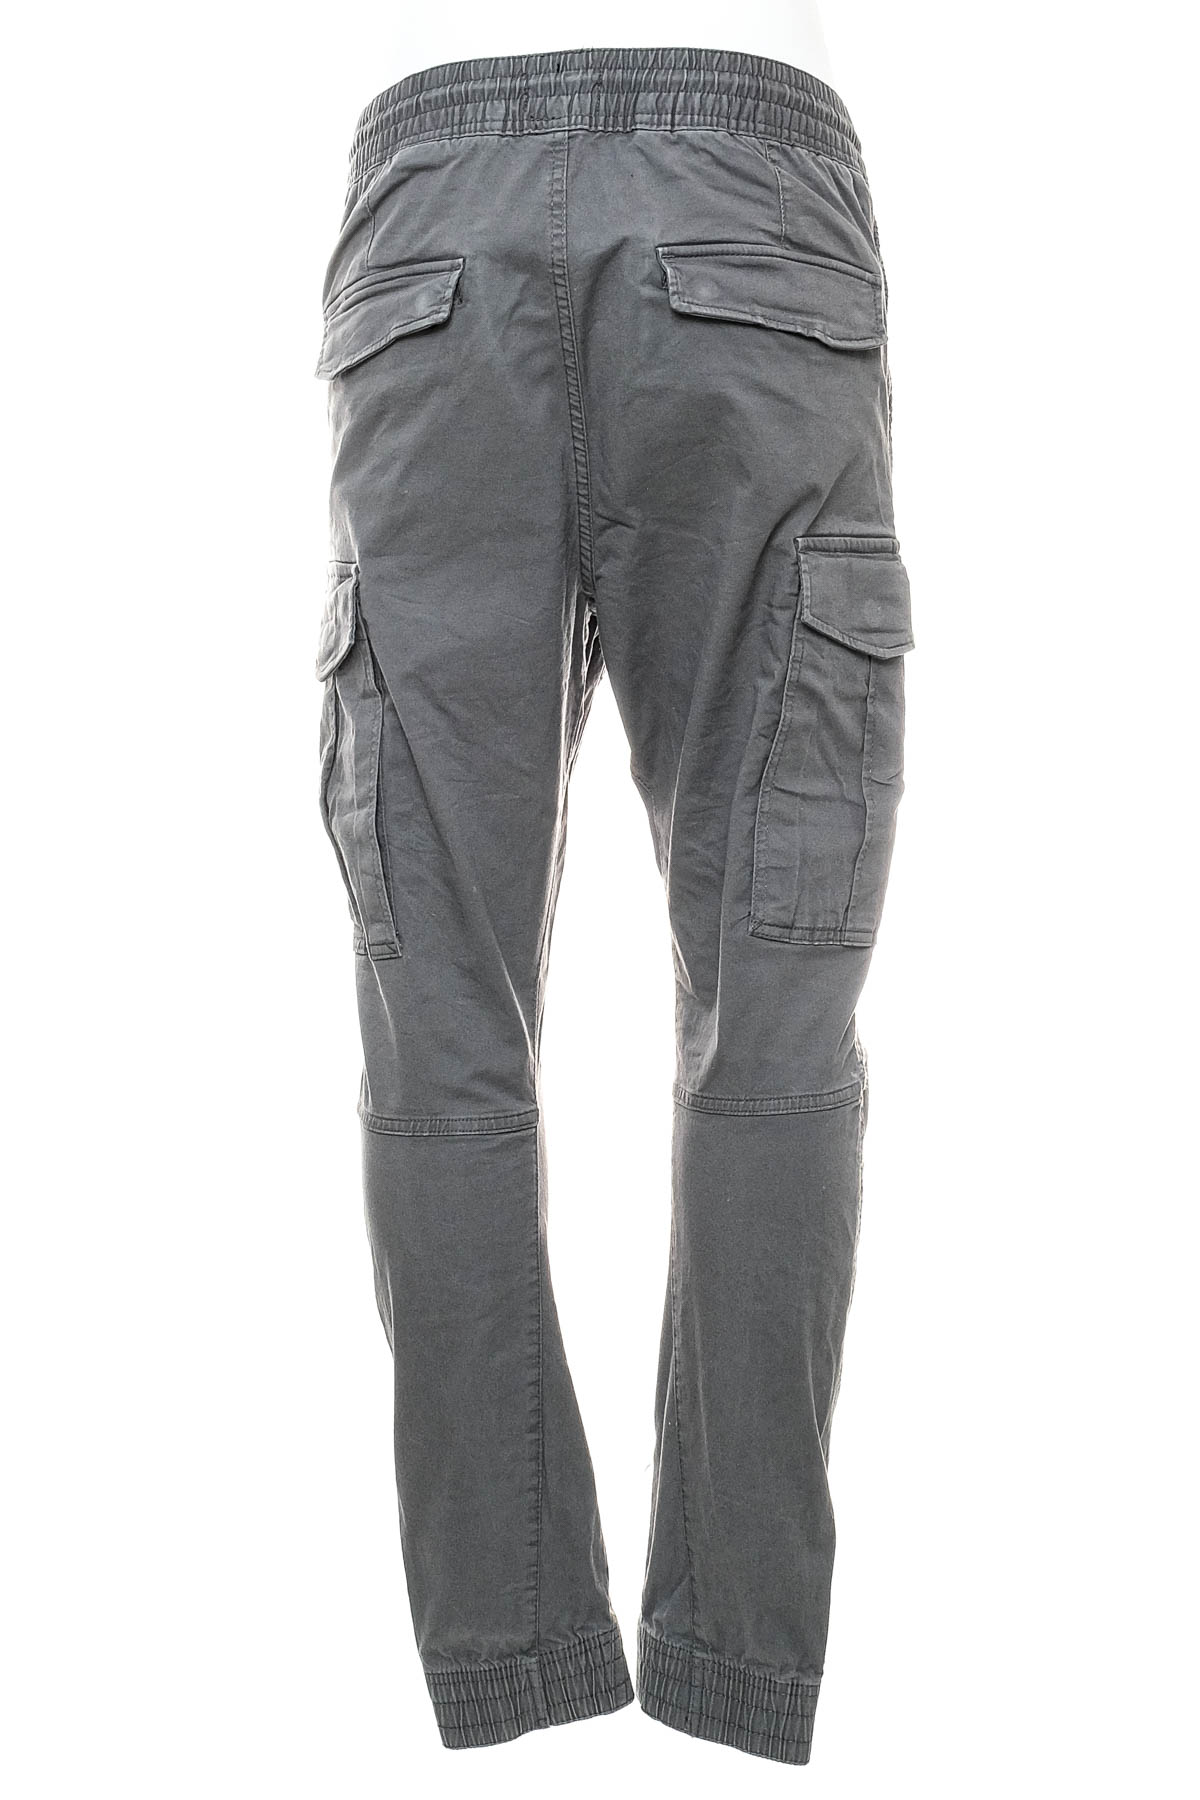 Men's trousers - H&M - 1